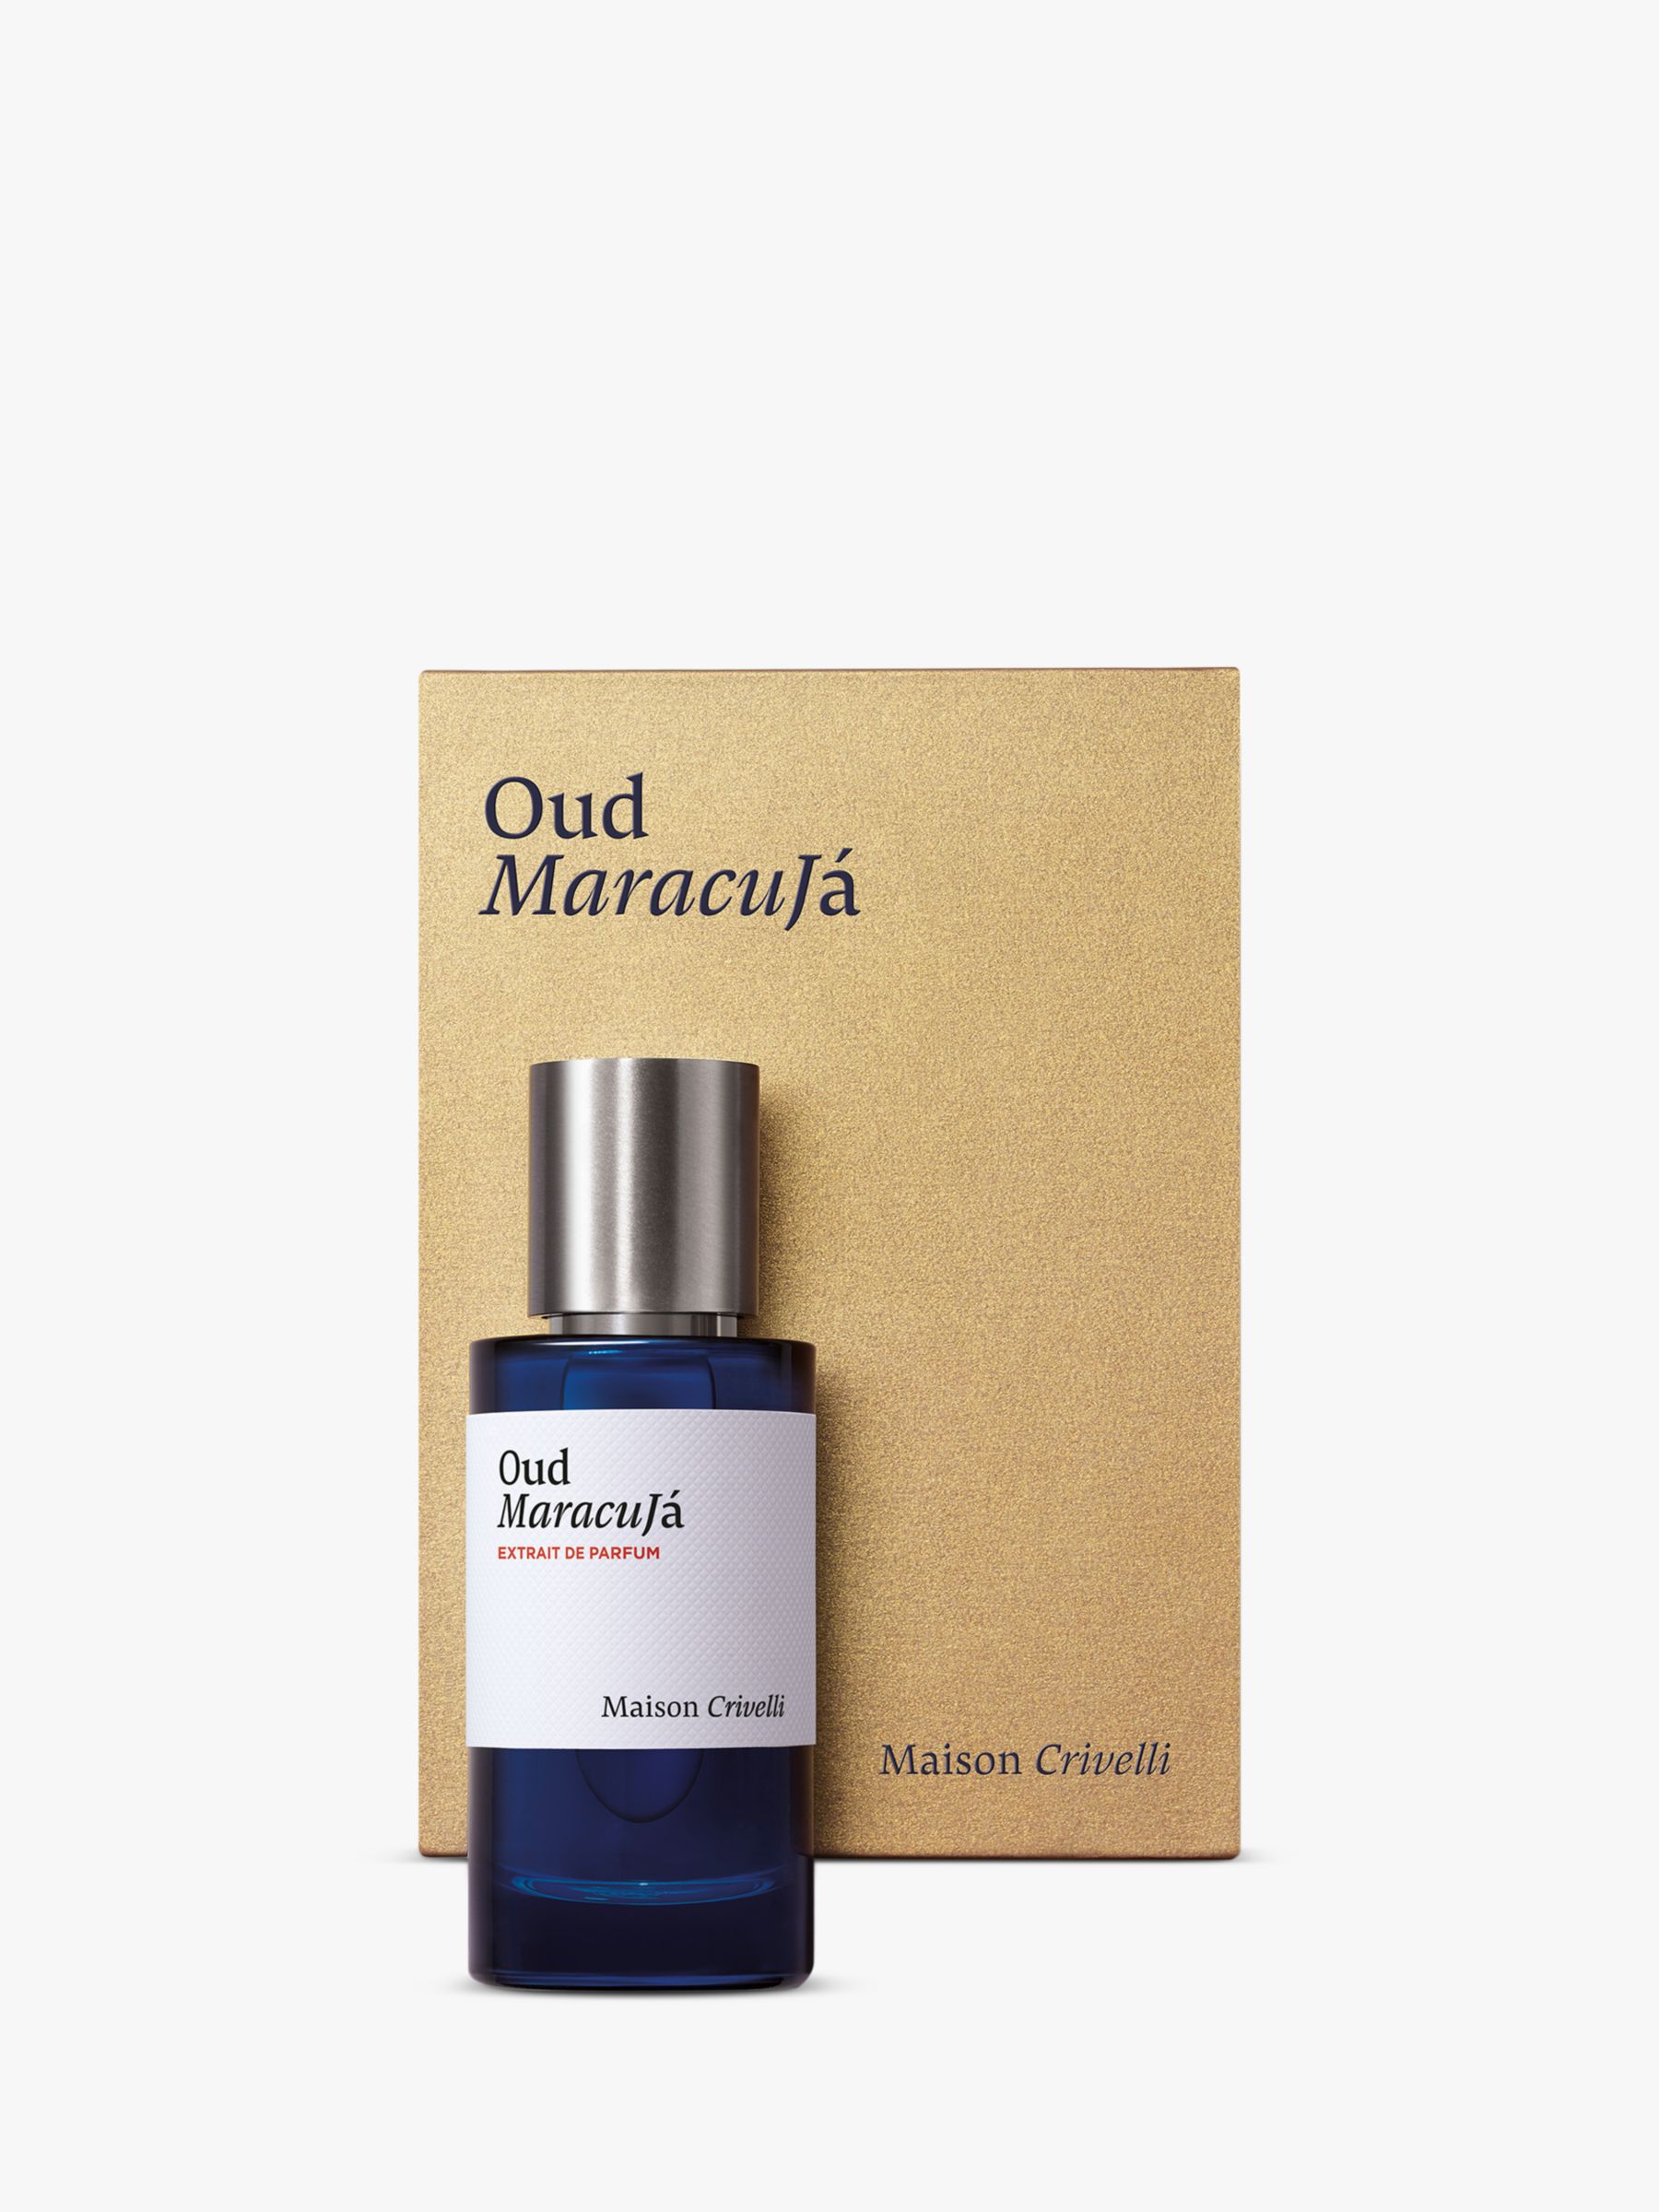 Maison Crivelli Oud Maracuja Extrait de Parfum, 50ml 2